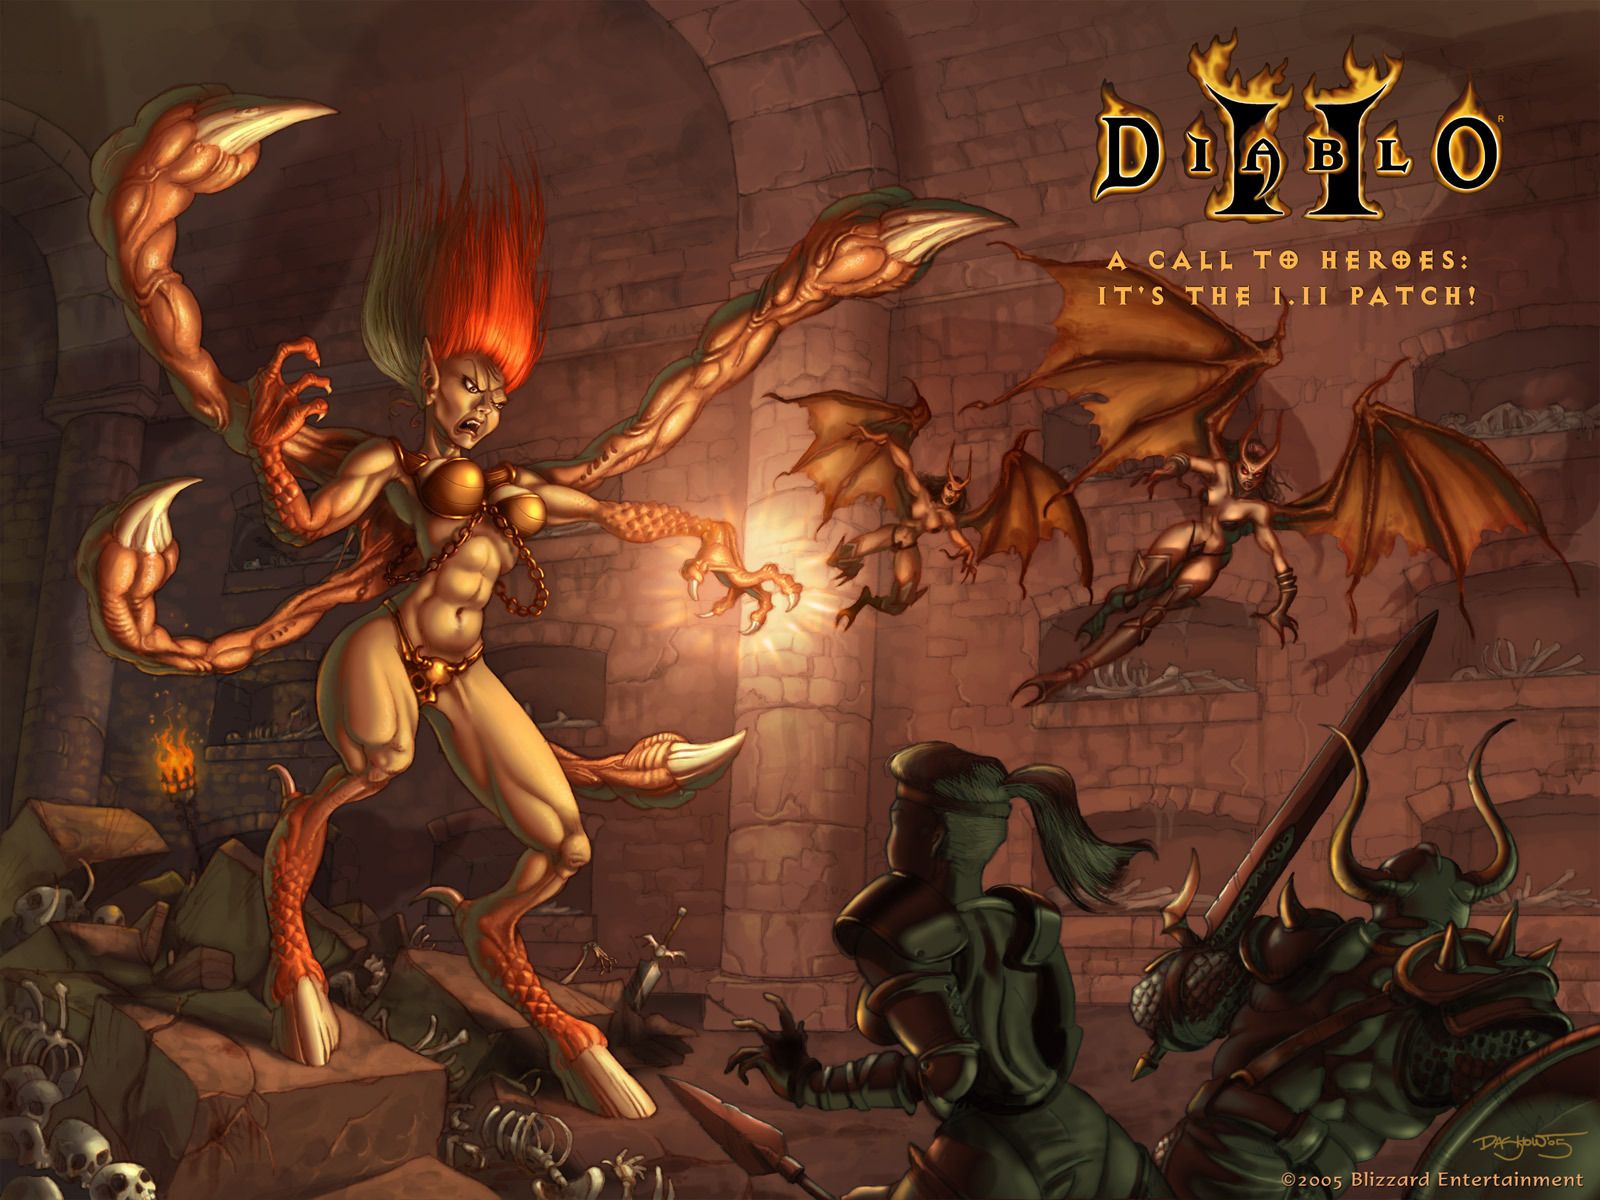 Diablo 2 Lod Wallpaper. Diablo 3 Wallpaper, Diablo Wallpaper and Diablo 3 Wizard Wallpaper